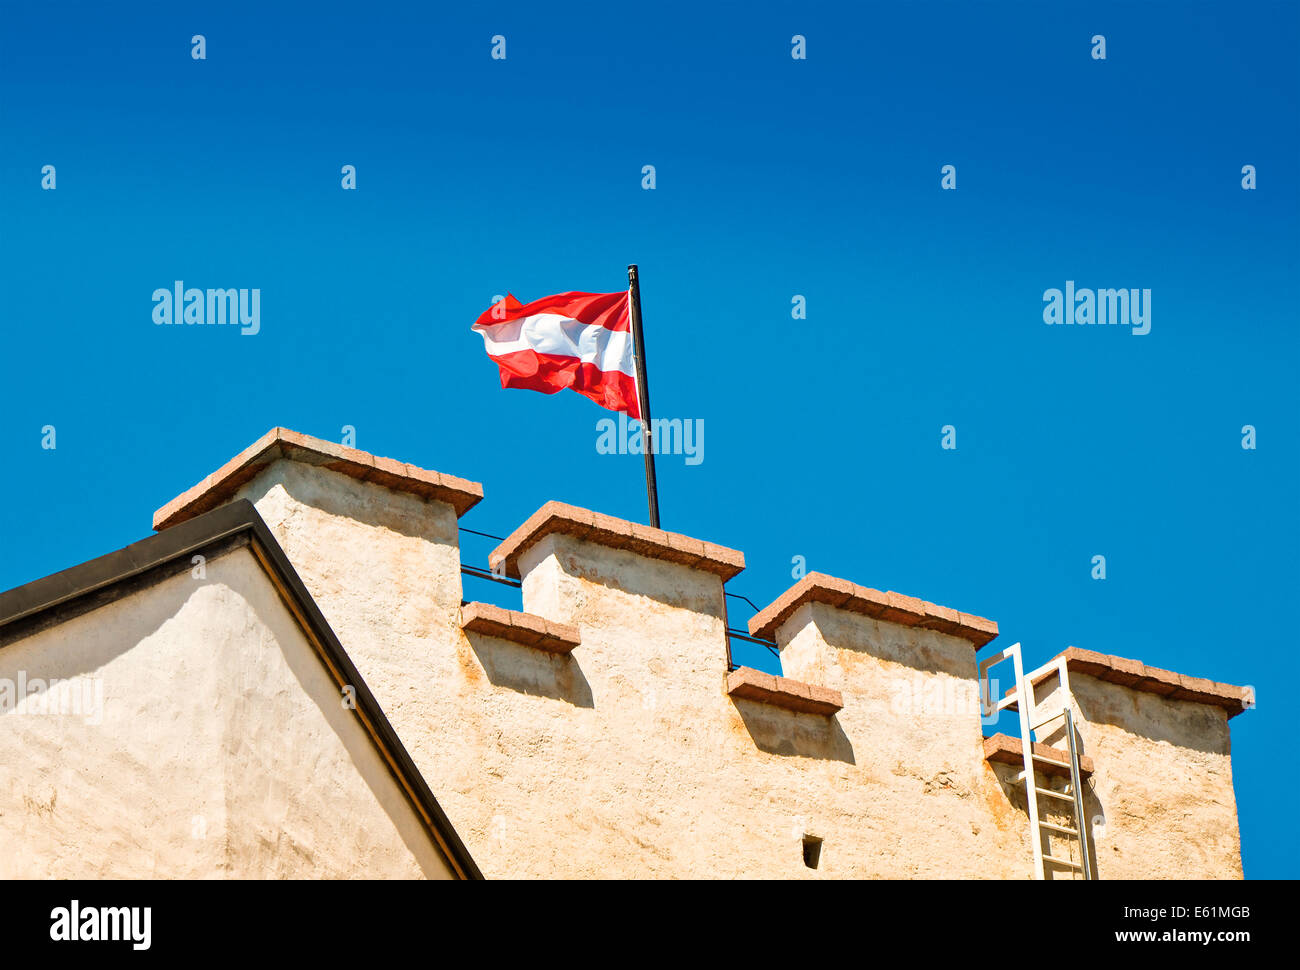 Österreich Flagge auf der Festung Hohensalzburg - österreichische Flagge gehisst auf einem Turm der Festung in Salzburg. Stockfoto